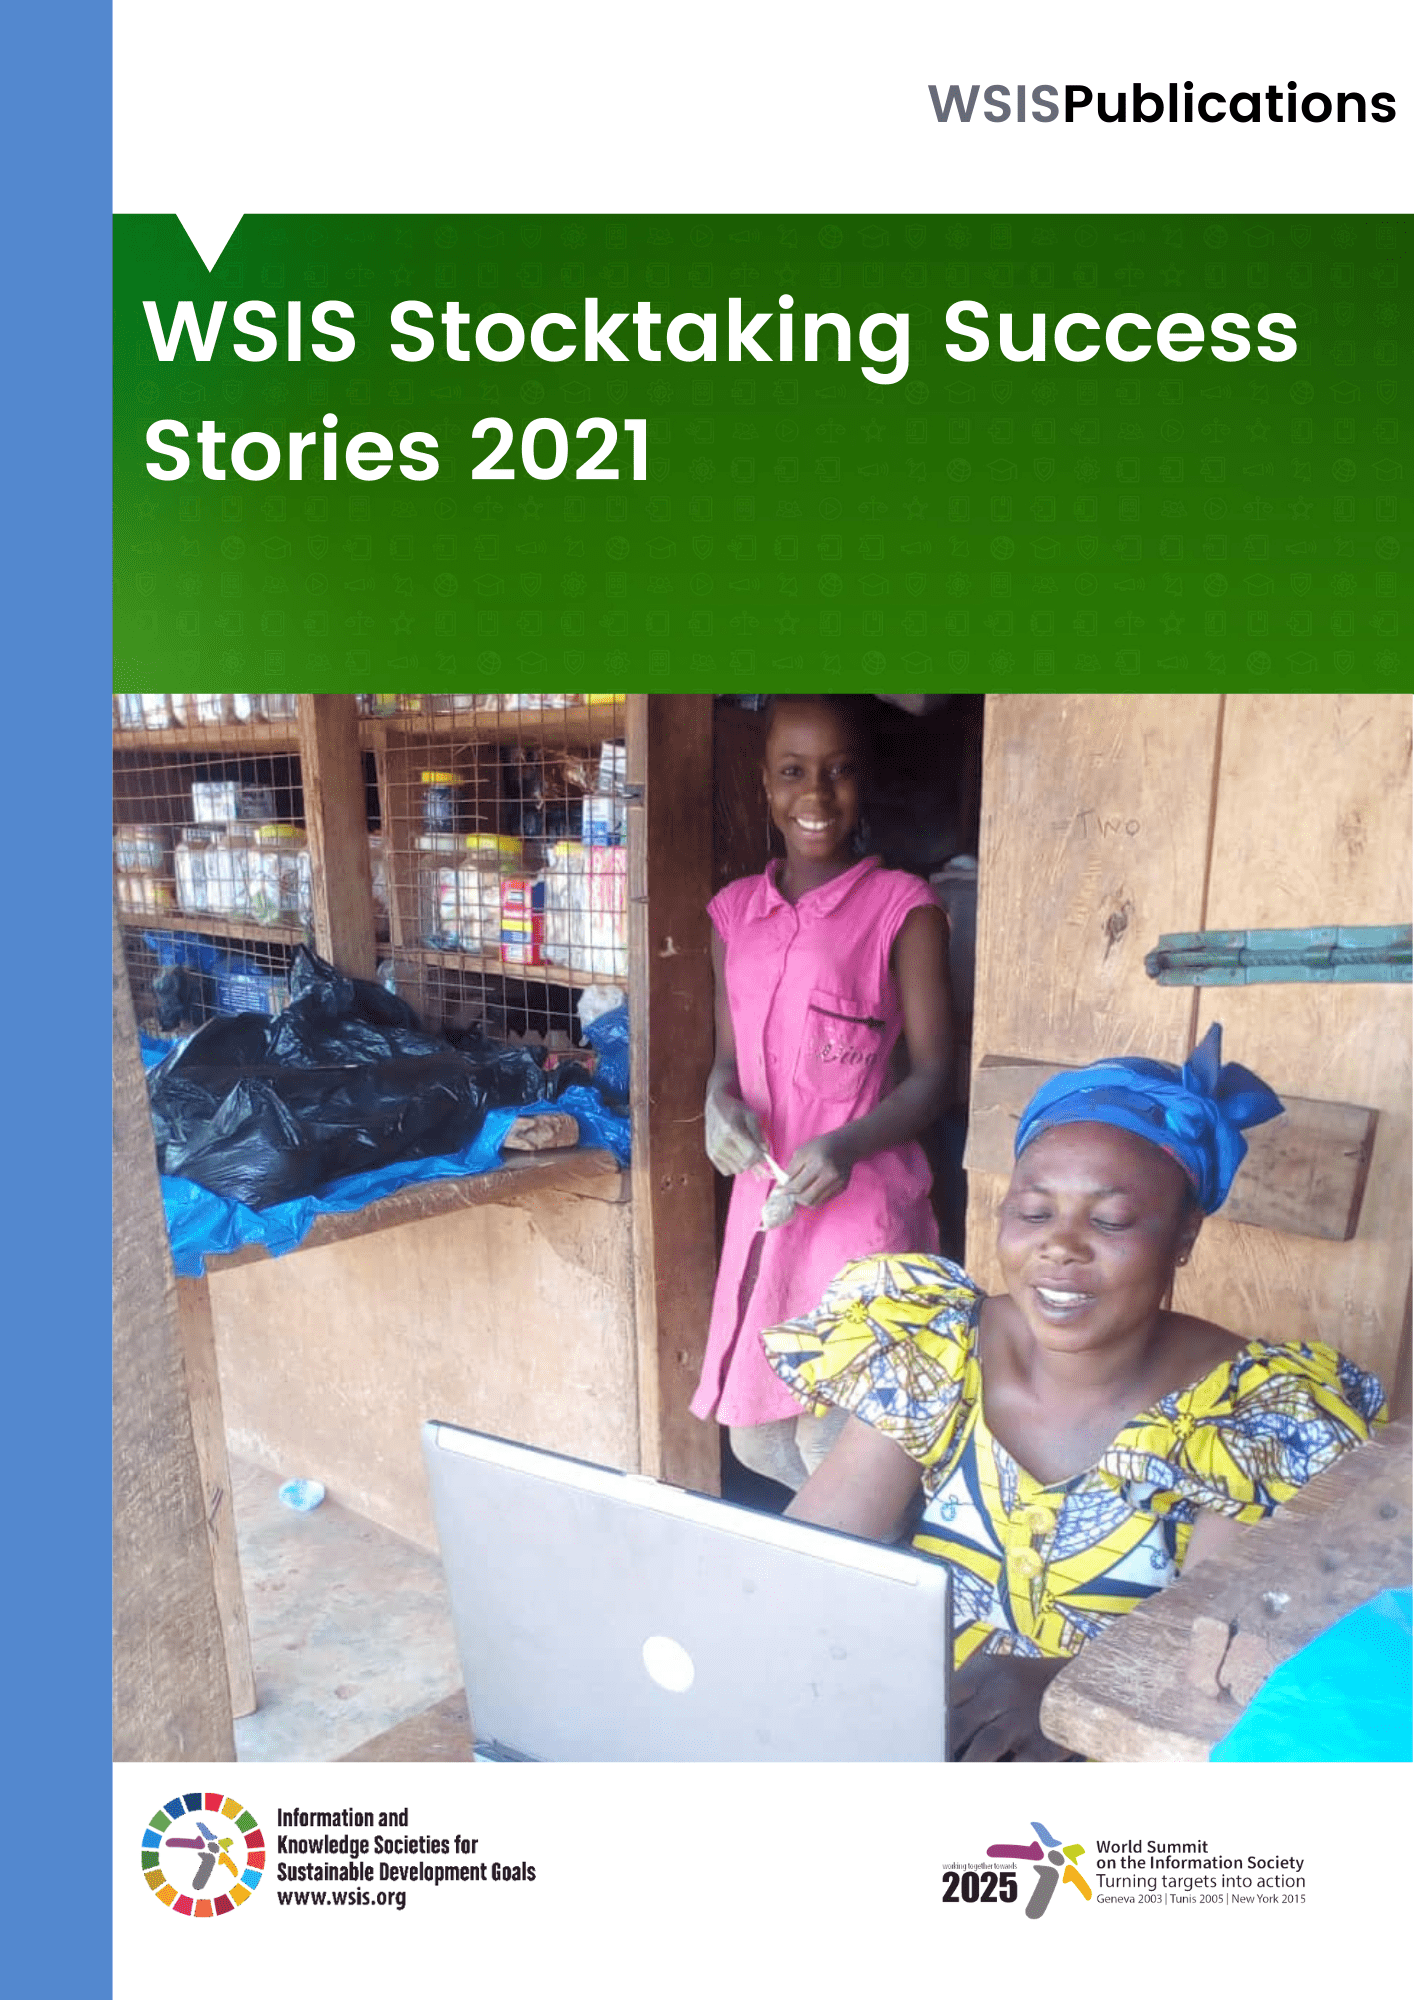 WSIS Stocktaking Success Stories 2021